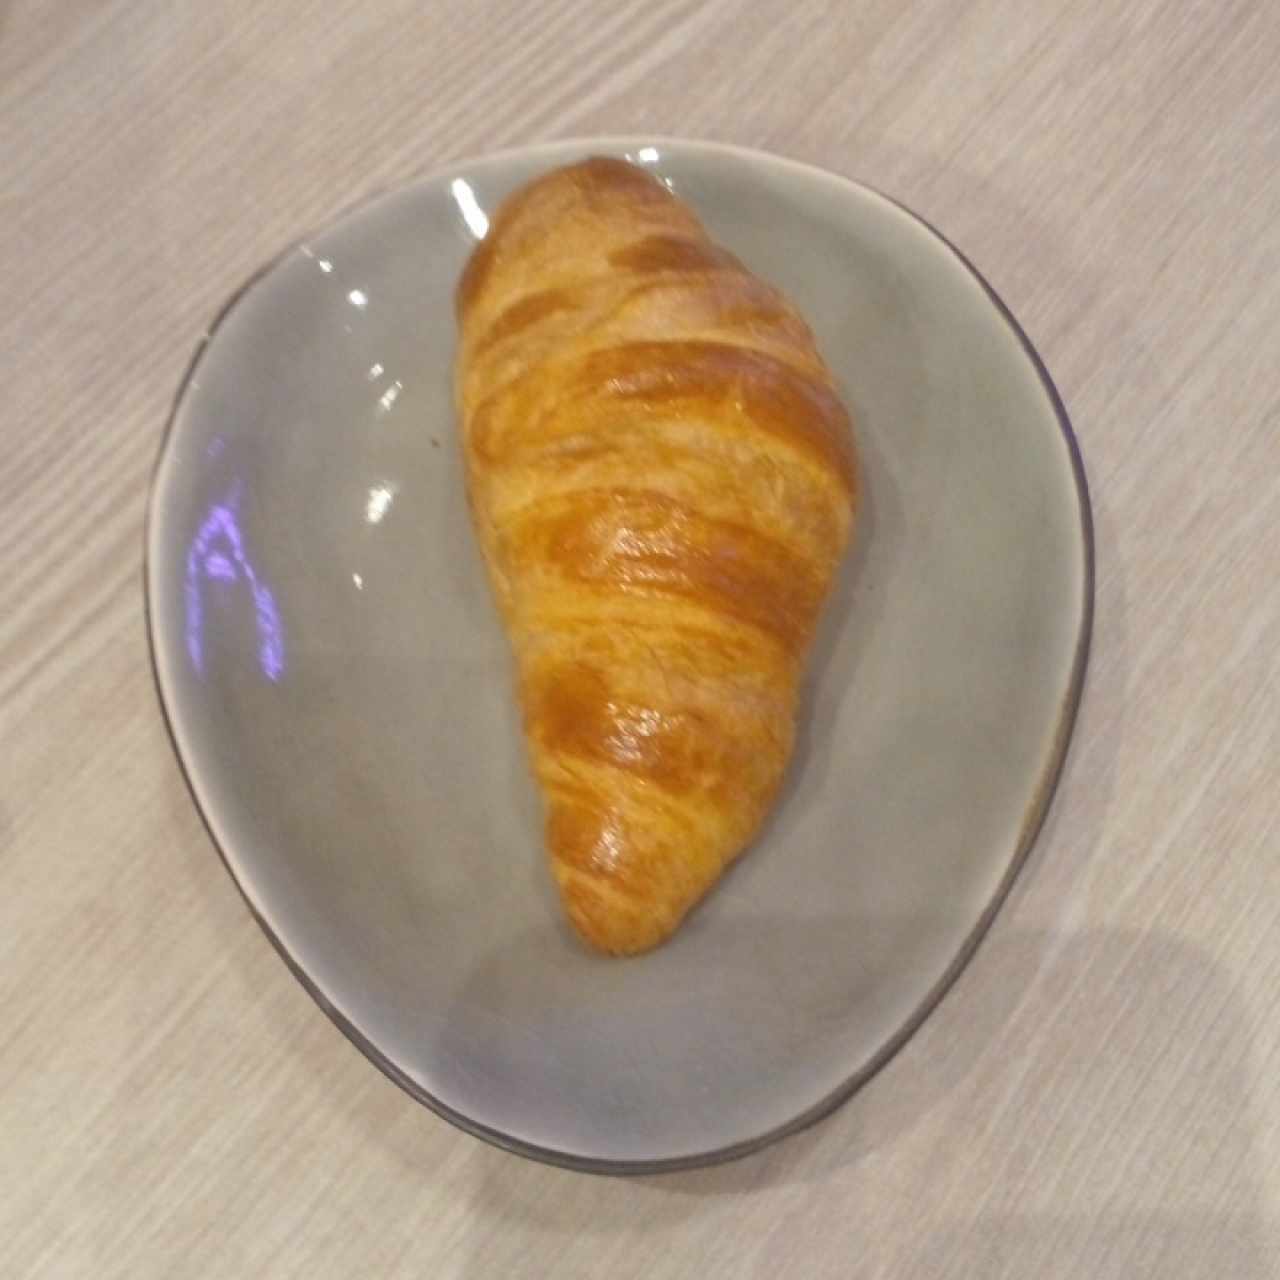 croissant